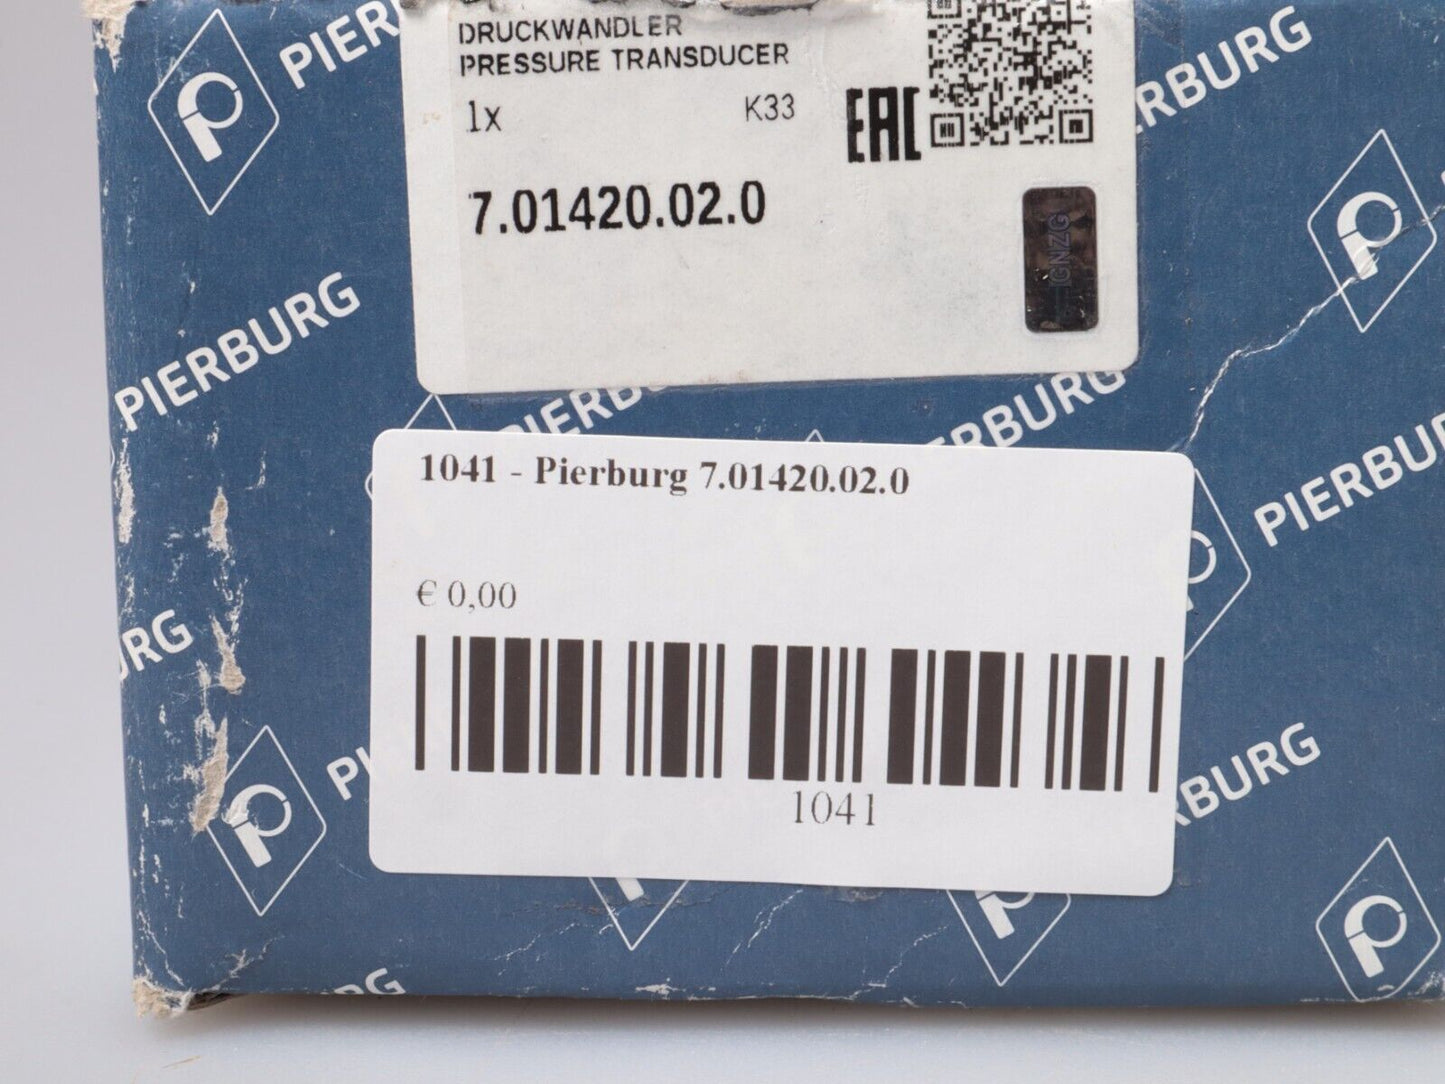 PIERBURG 7.01420.02.0 El.pneum converter Pressure transducer